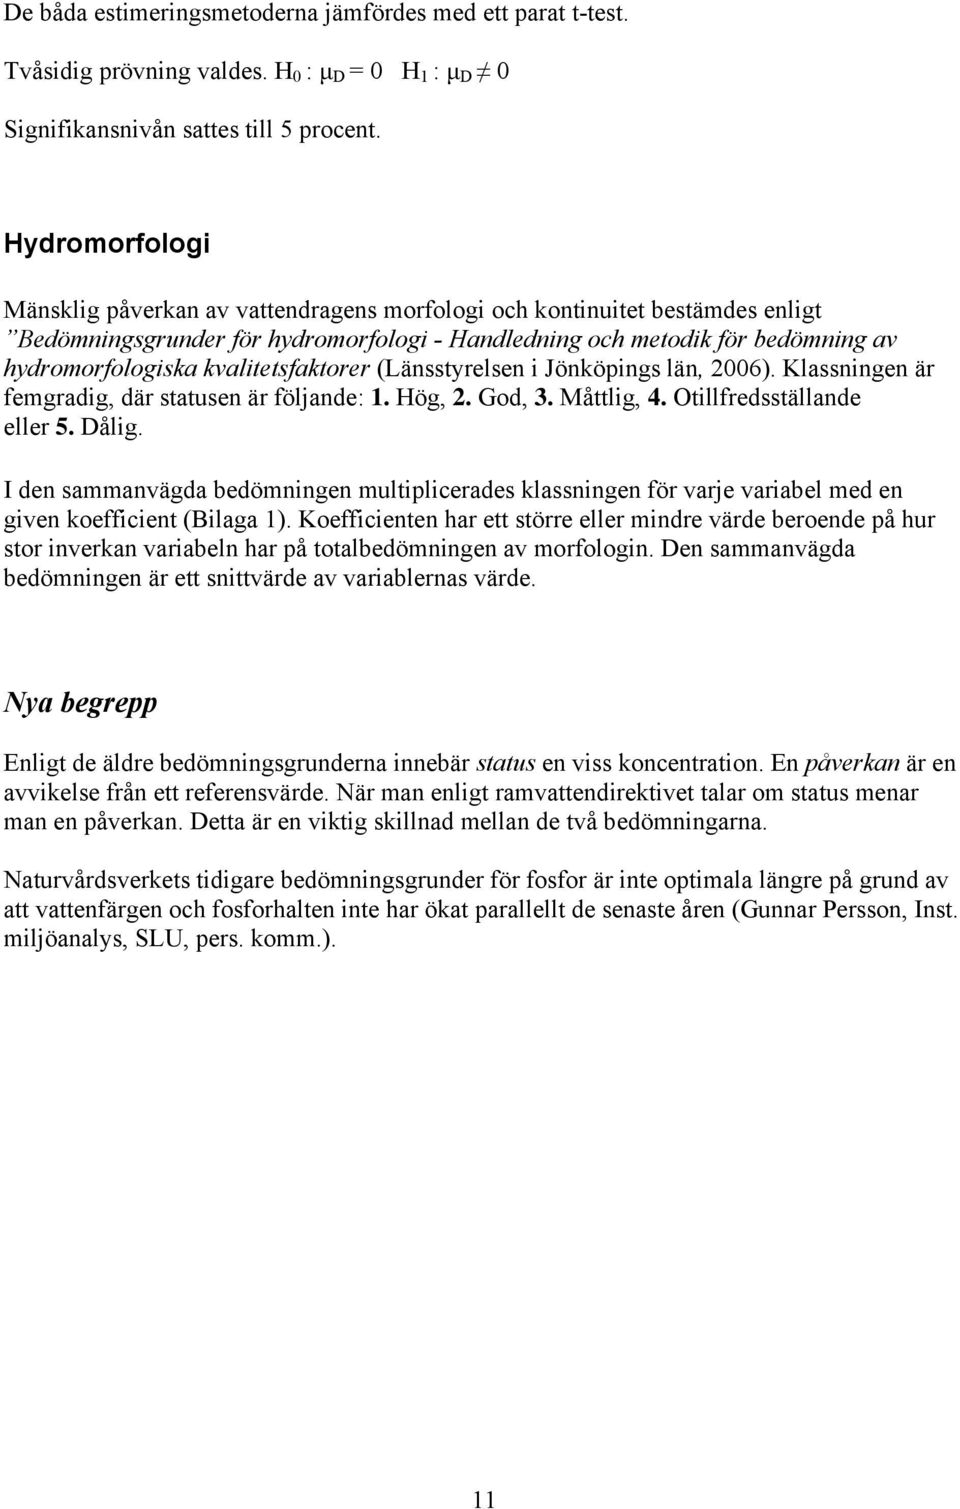 kvalitetsfaktorer (Länsstyrelsen i Jönköpings län, 2006). Klassningen är femgradig, där statusen är följande: 1. Hög, 2. God, 3. Måttlig, 4. Otillfredsställande eller 5. Dålig.